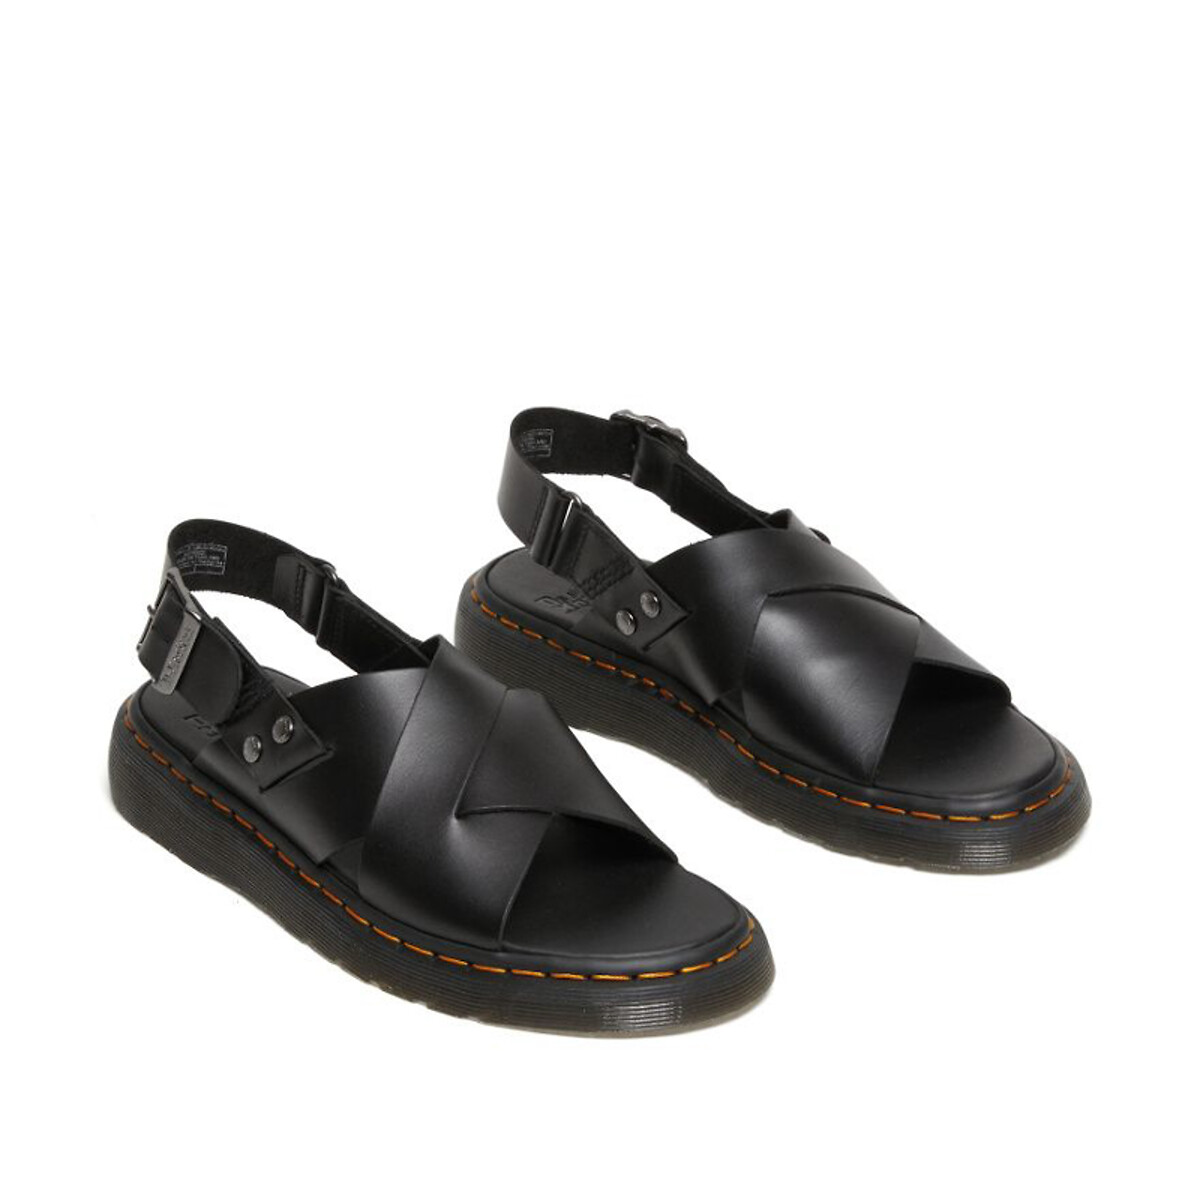 Zane brando leather sandals black Dr. Martens | La Redoute